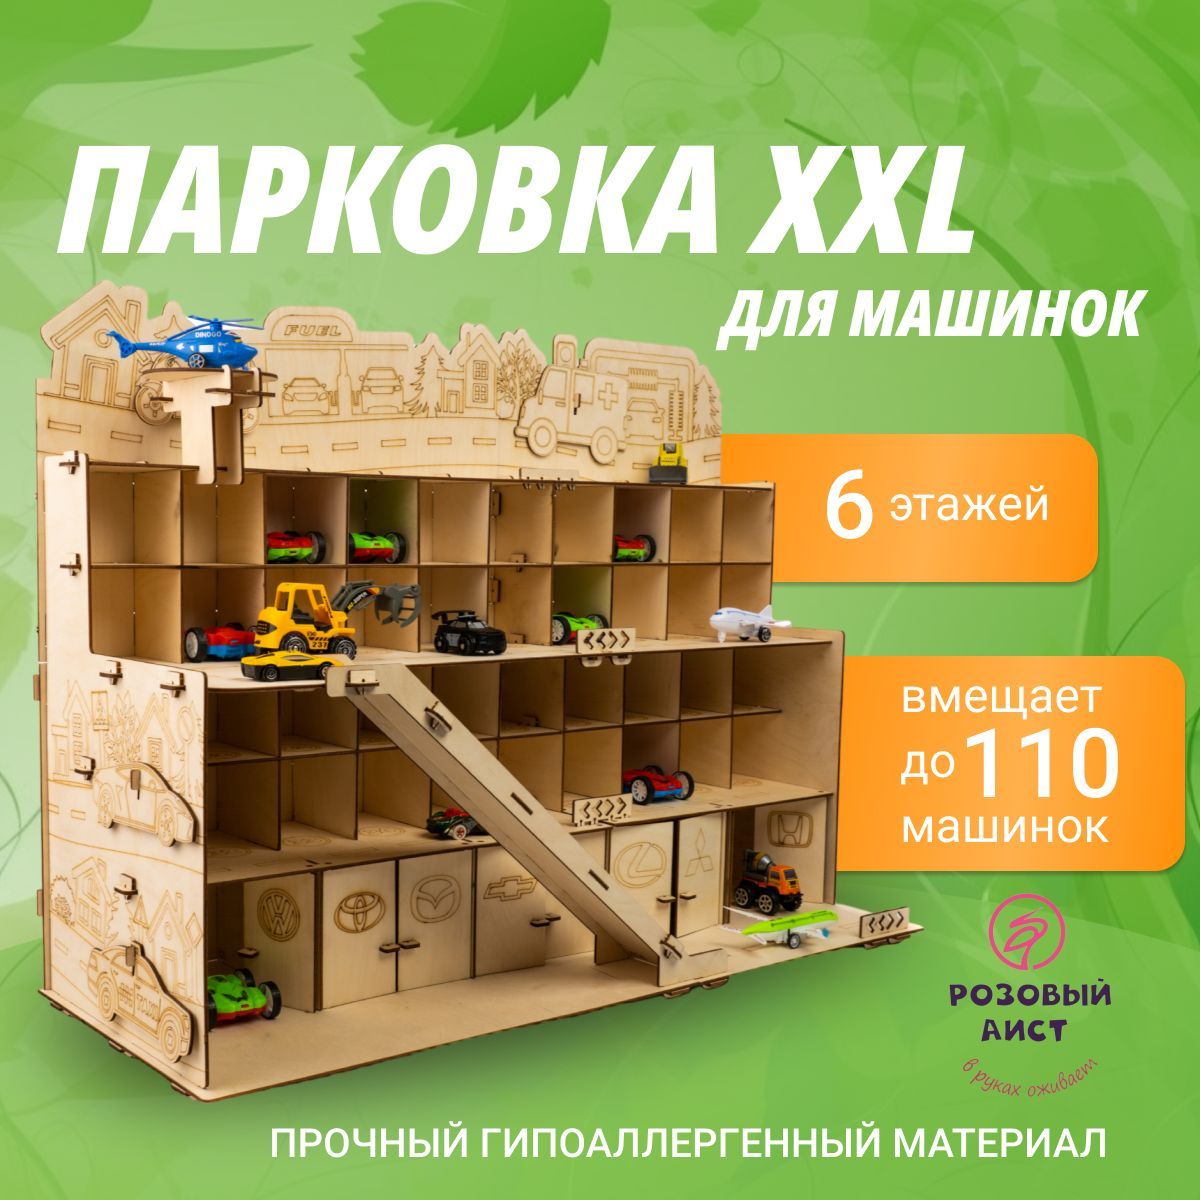 ТОП идей полезных подарков для детей ✅ Блог internat-mednogorsk.ru